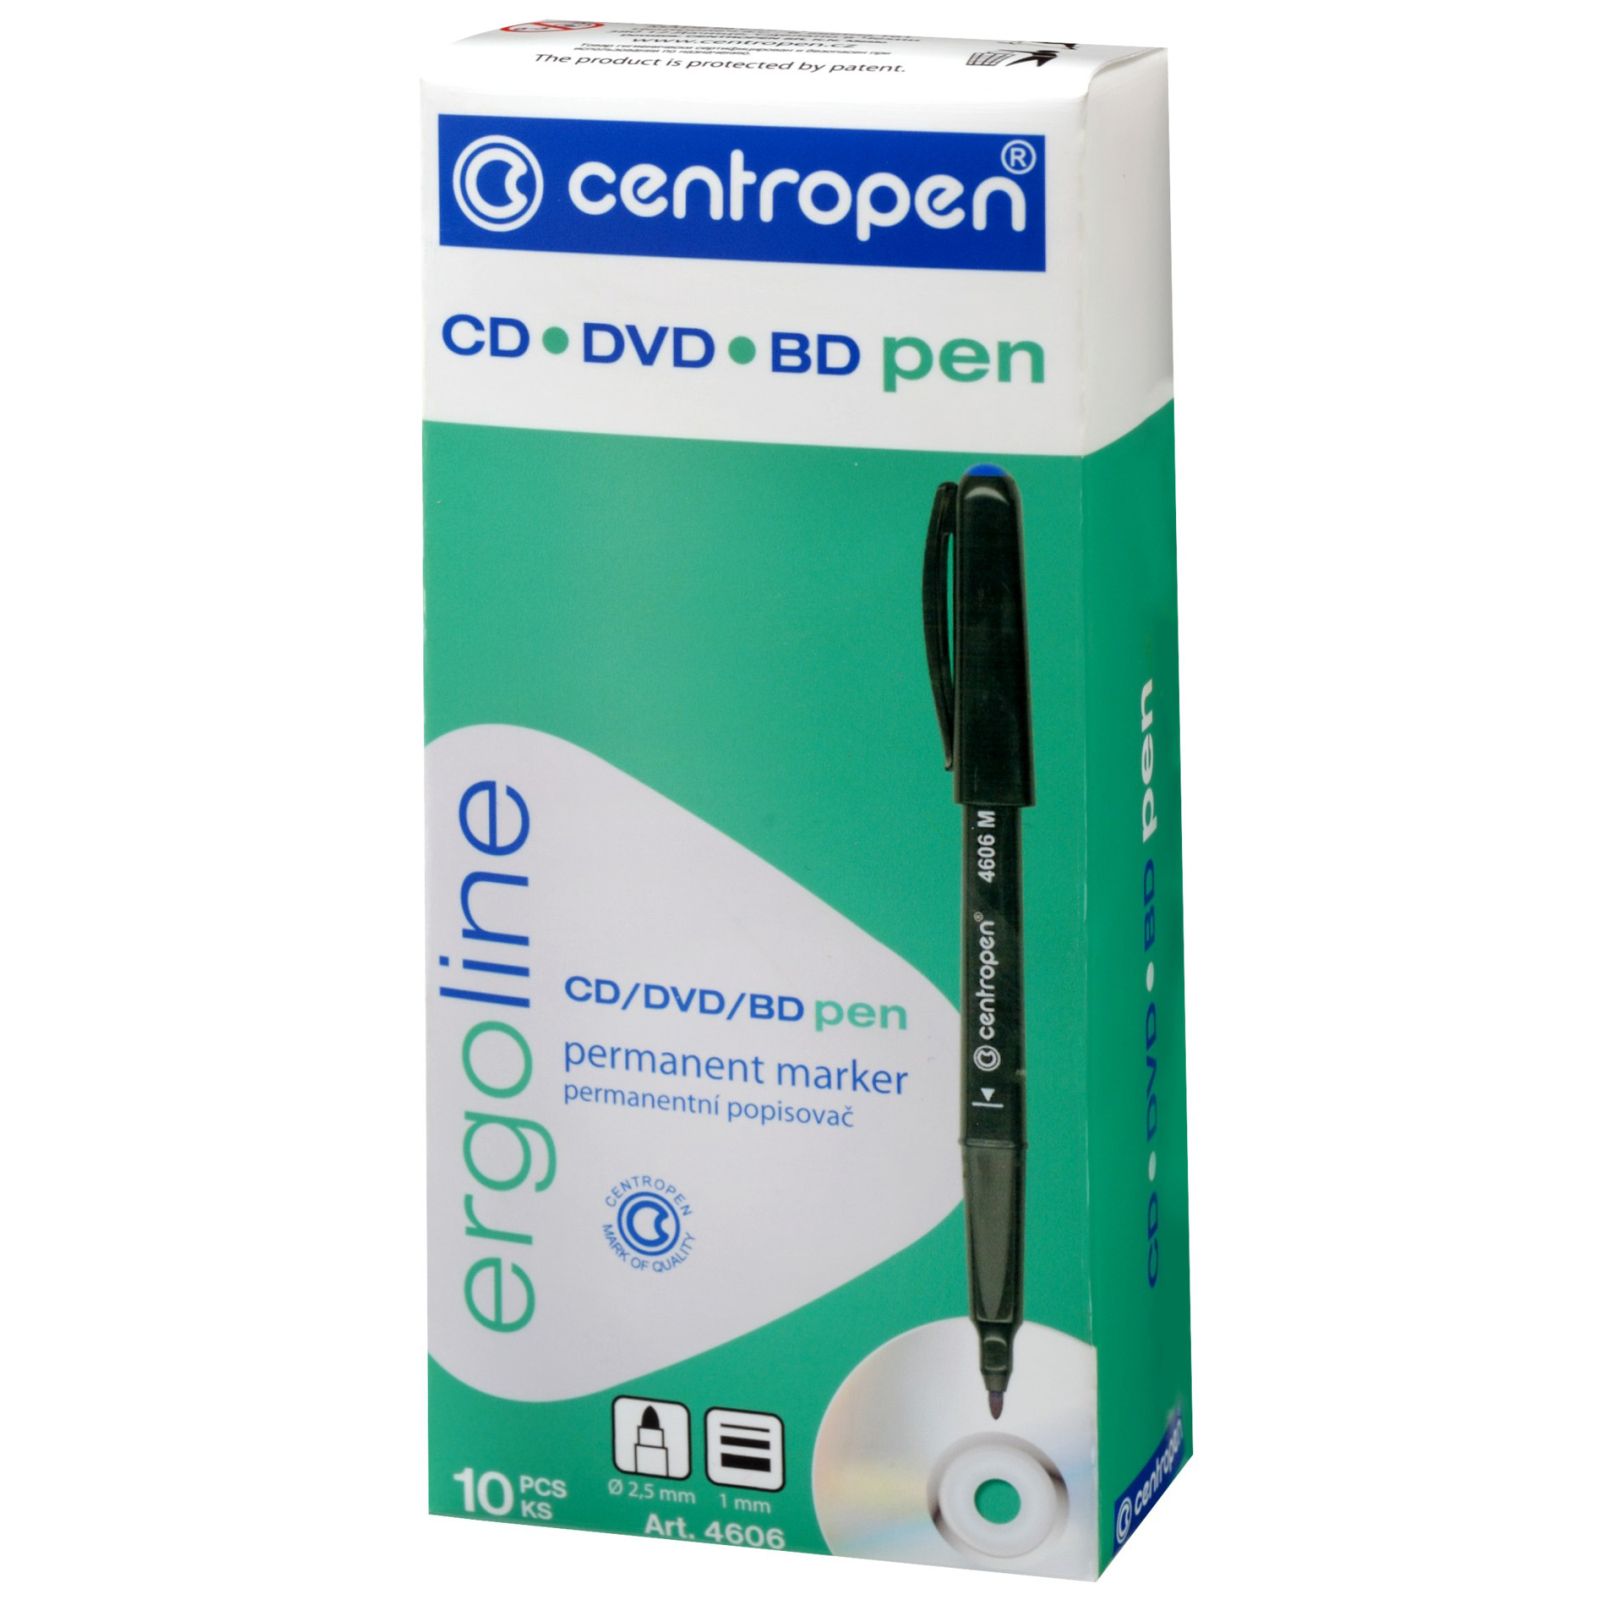 Маркер Centropen CD-Pen 4606 ergoline, 1 мм red (4606/02) изображение 2